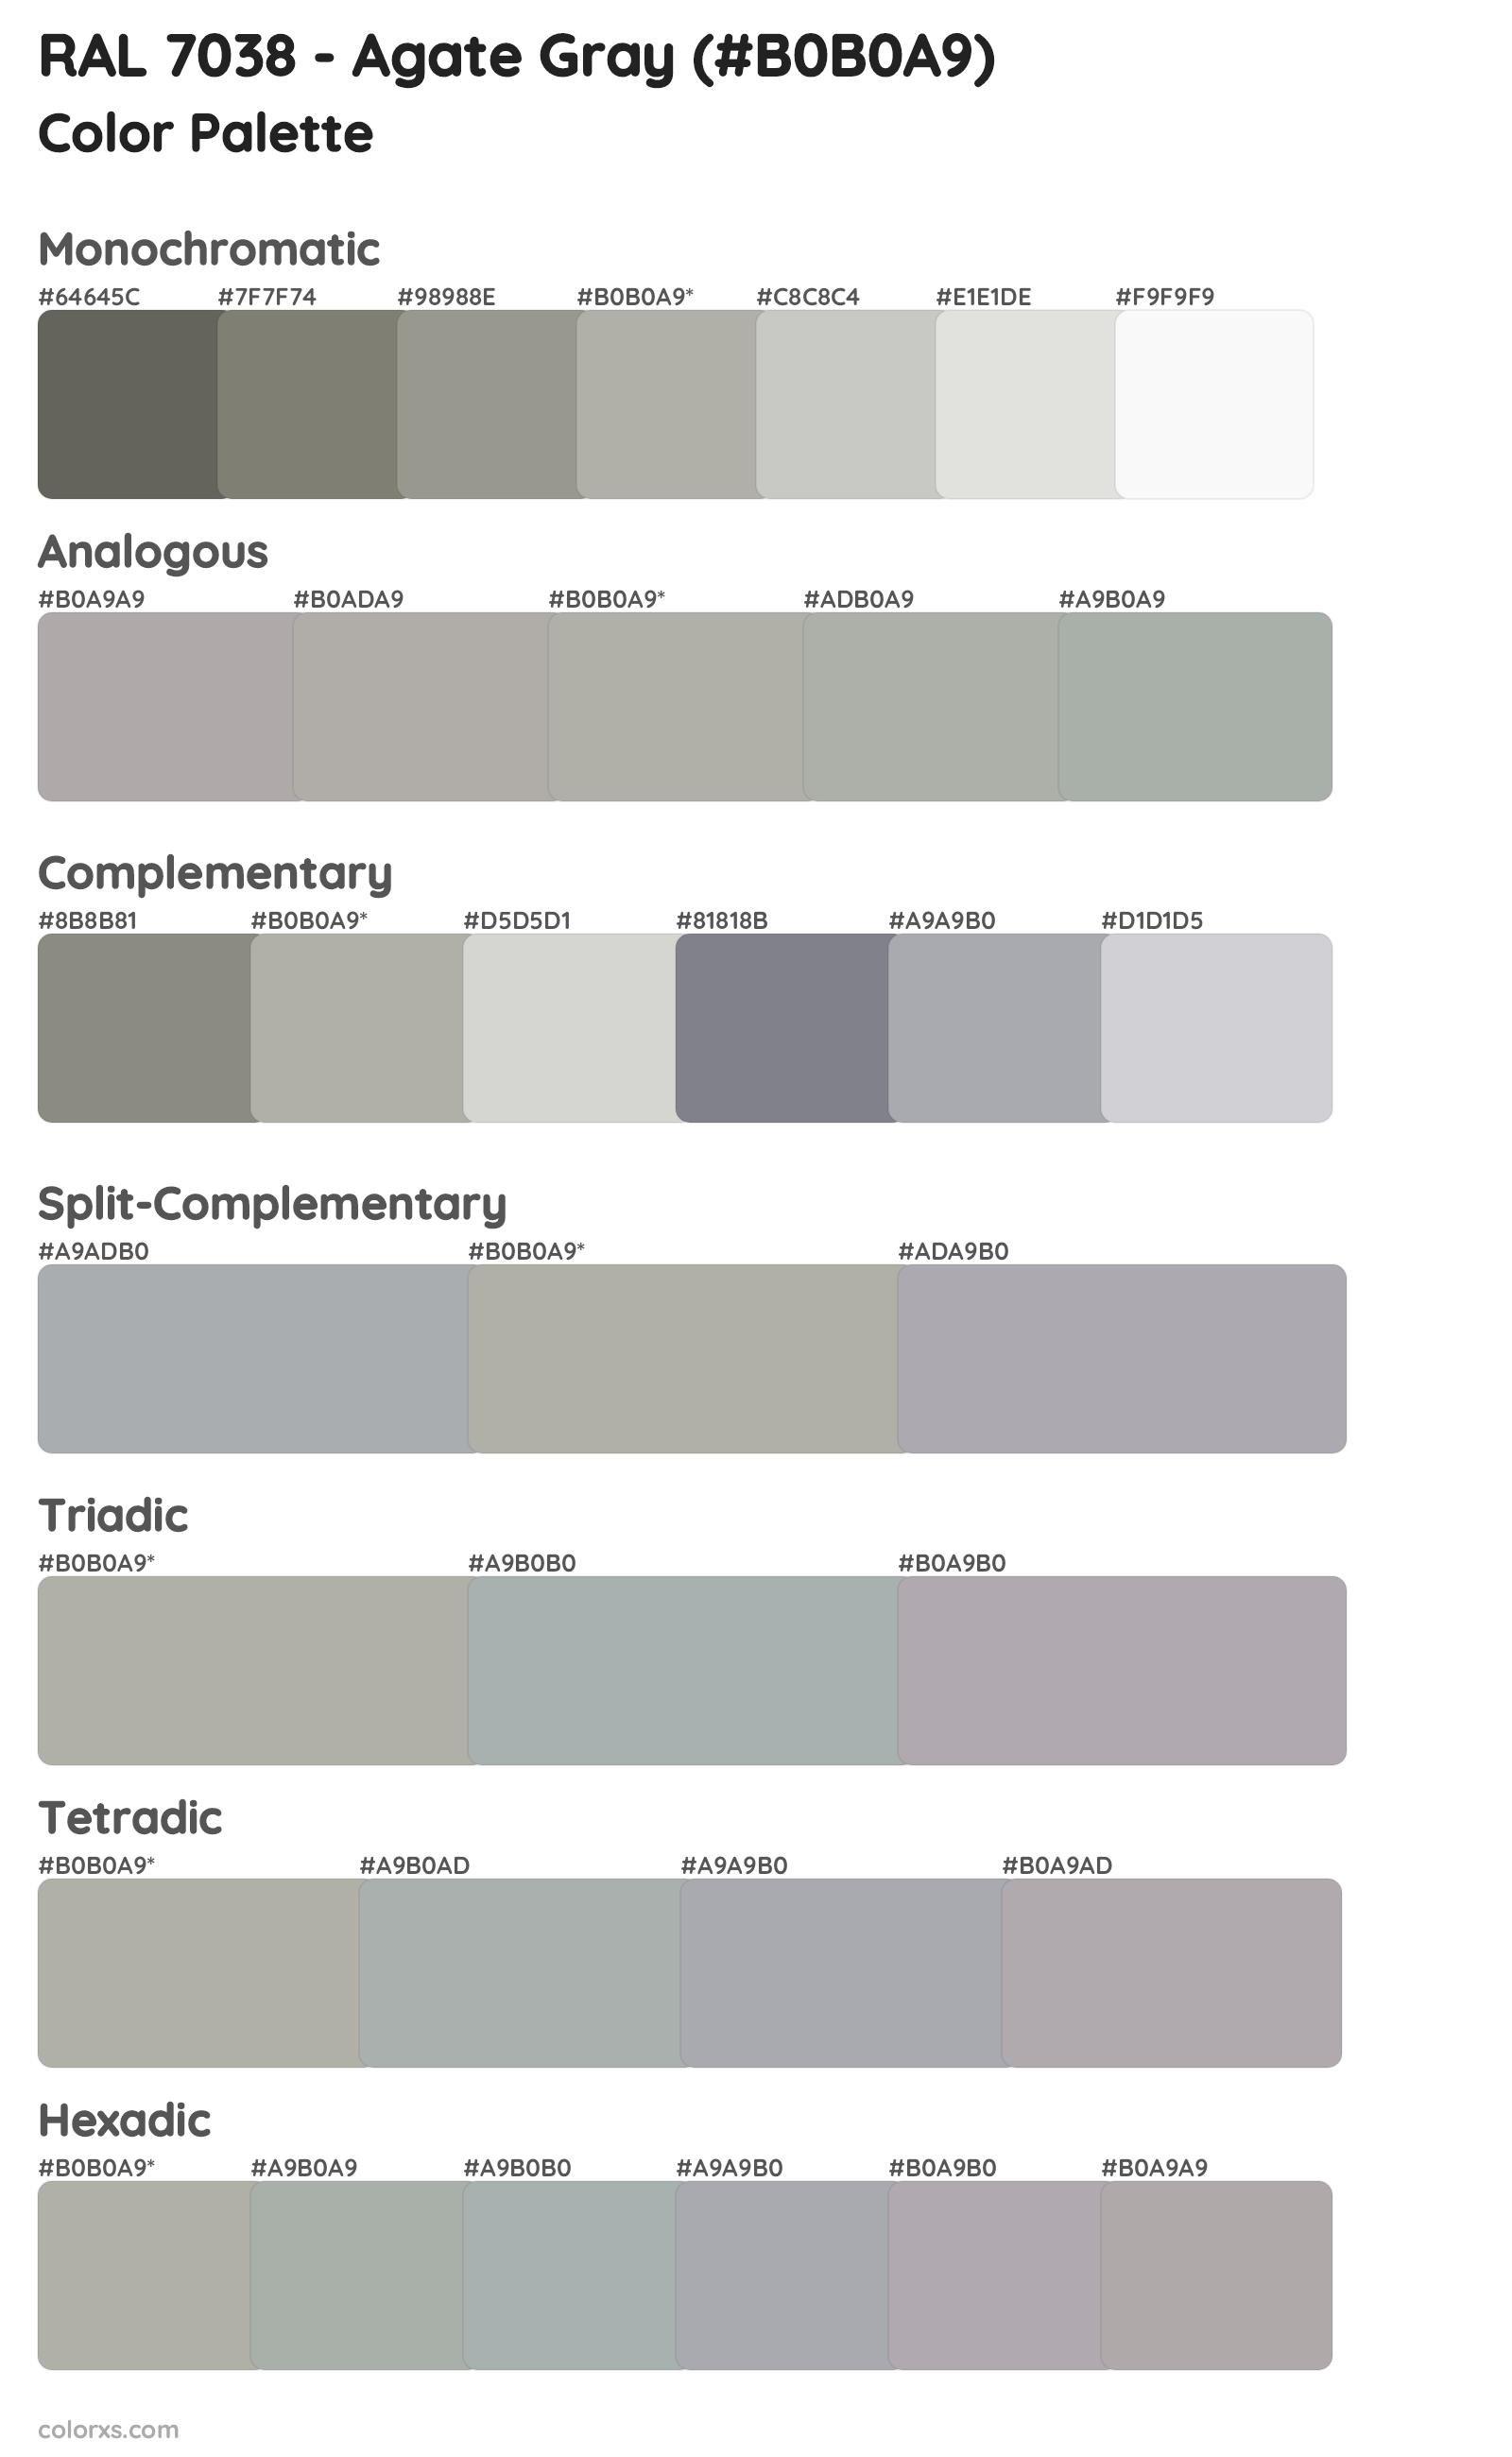 RAL 7038 - Agate Gray Color Scheme Palettes